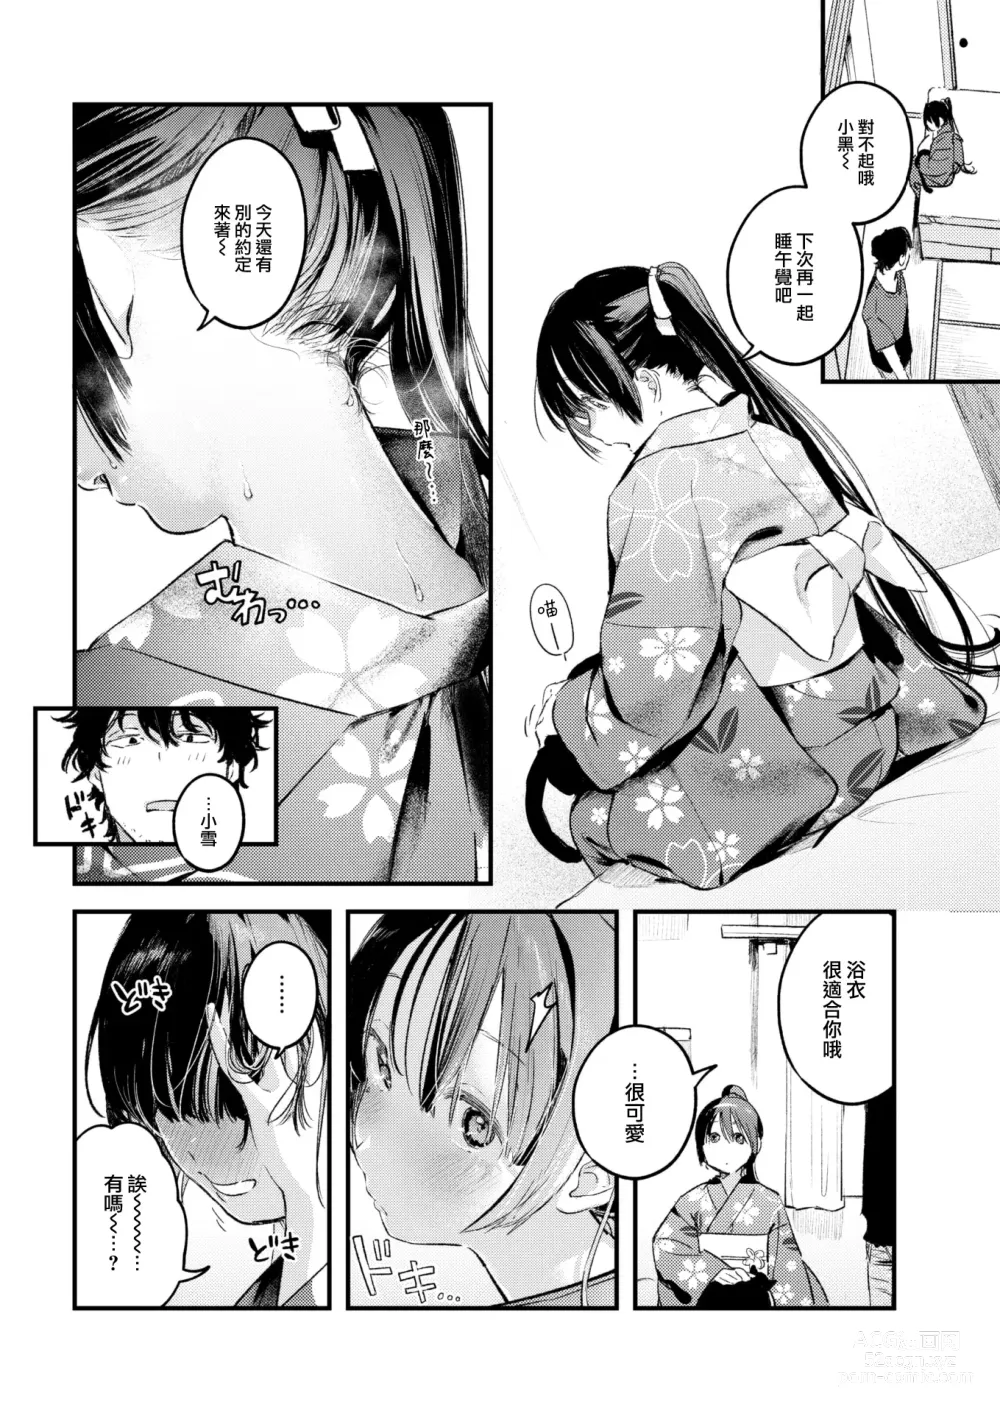 Page 17 of manga Koi no Mukidashi